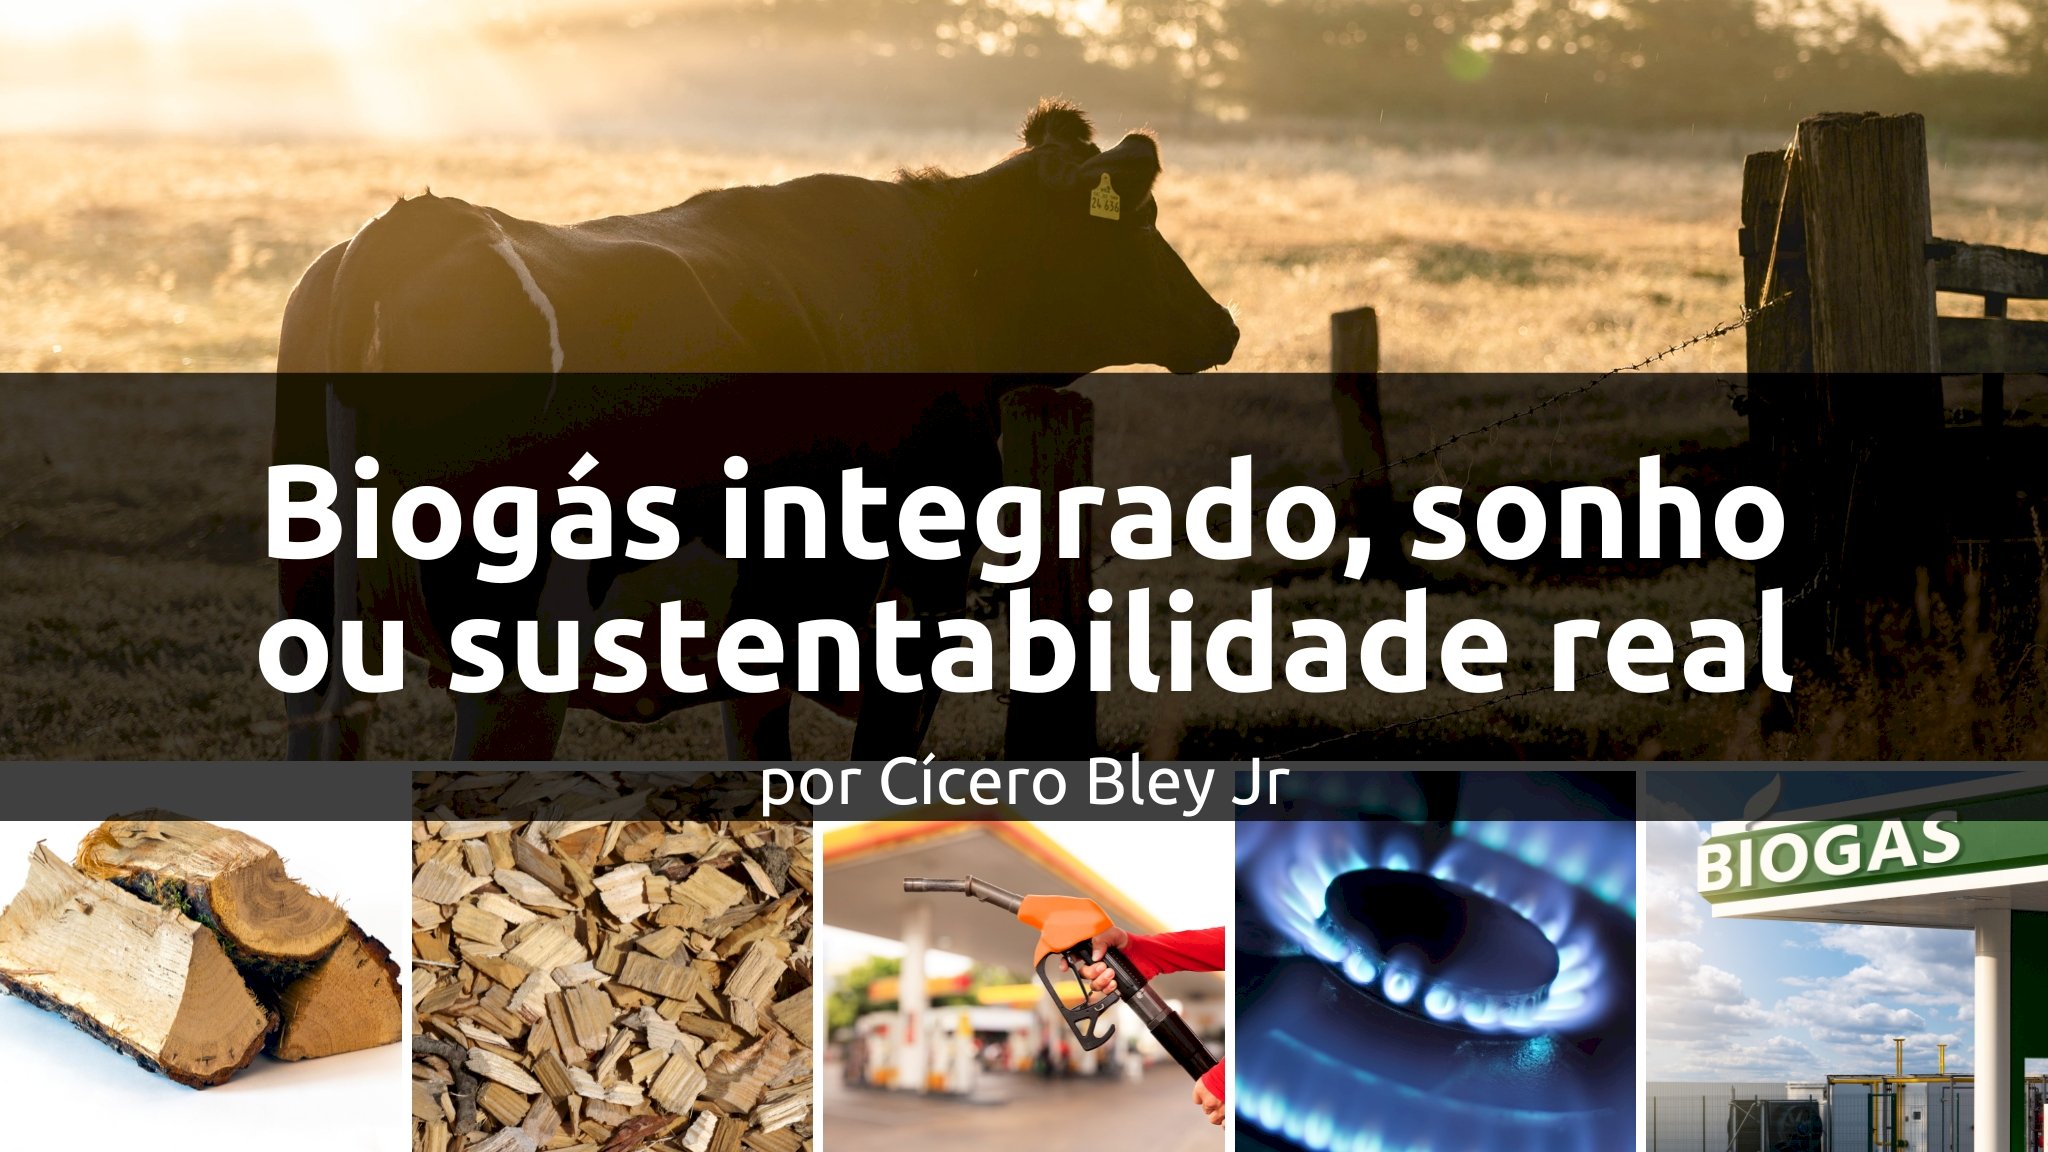 Biogás integrado, sonho ou sustentabilidade real